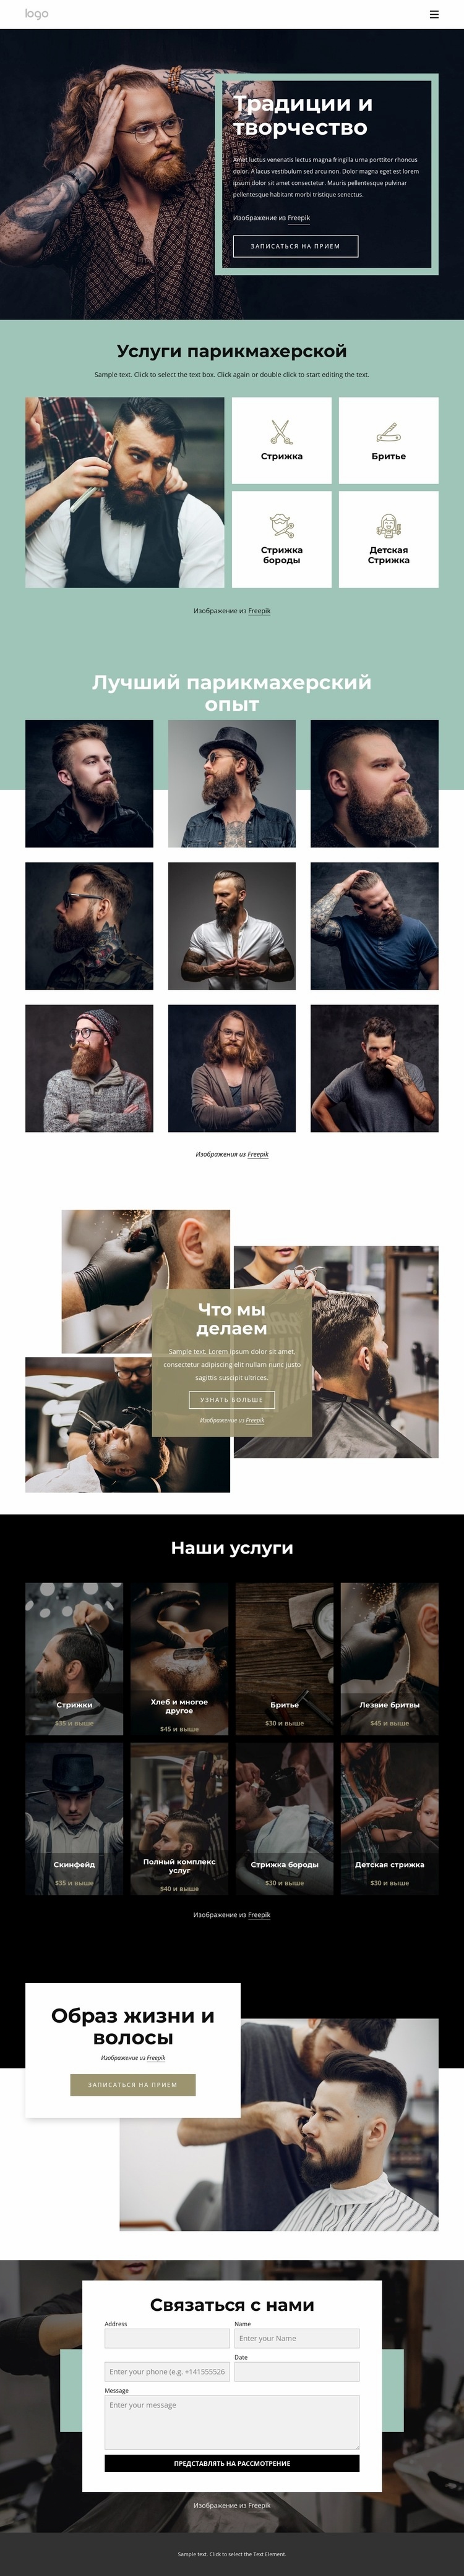 Общественный парикмахерский салон Дизайн сайта